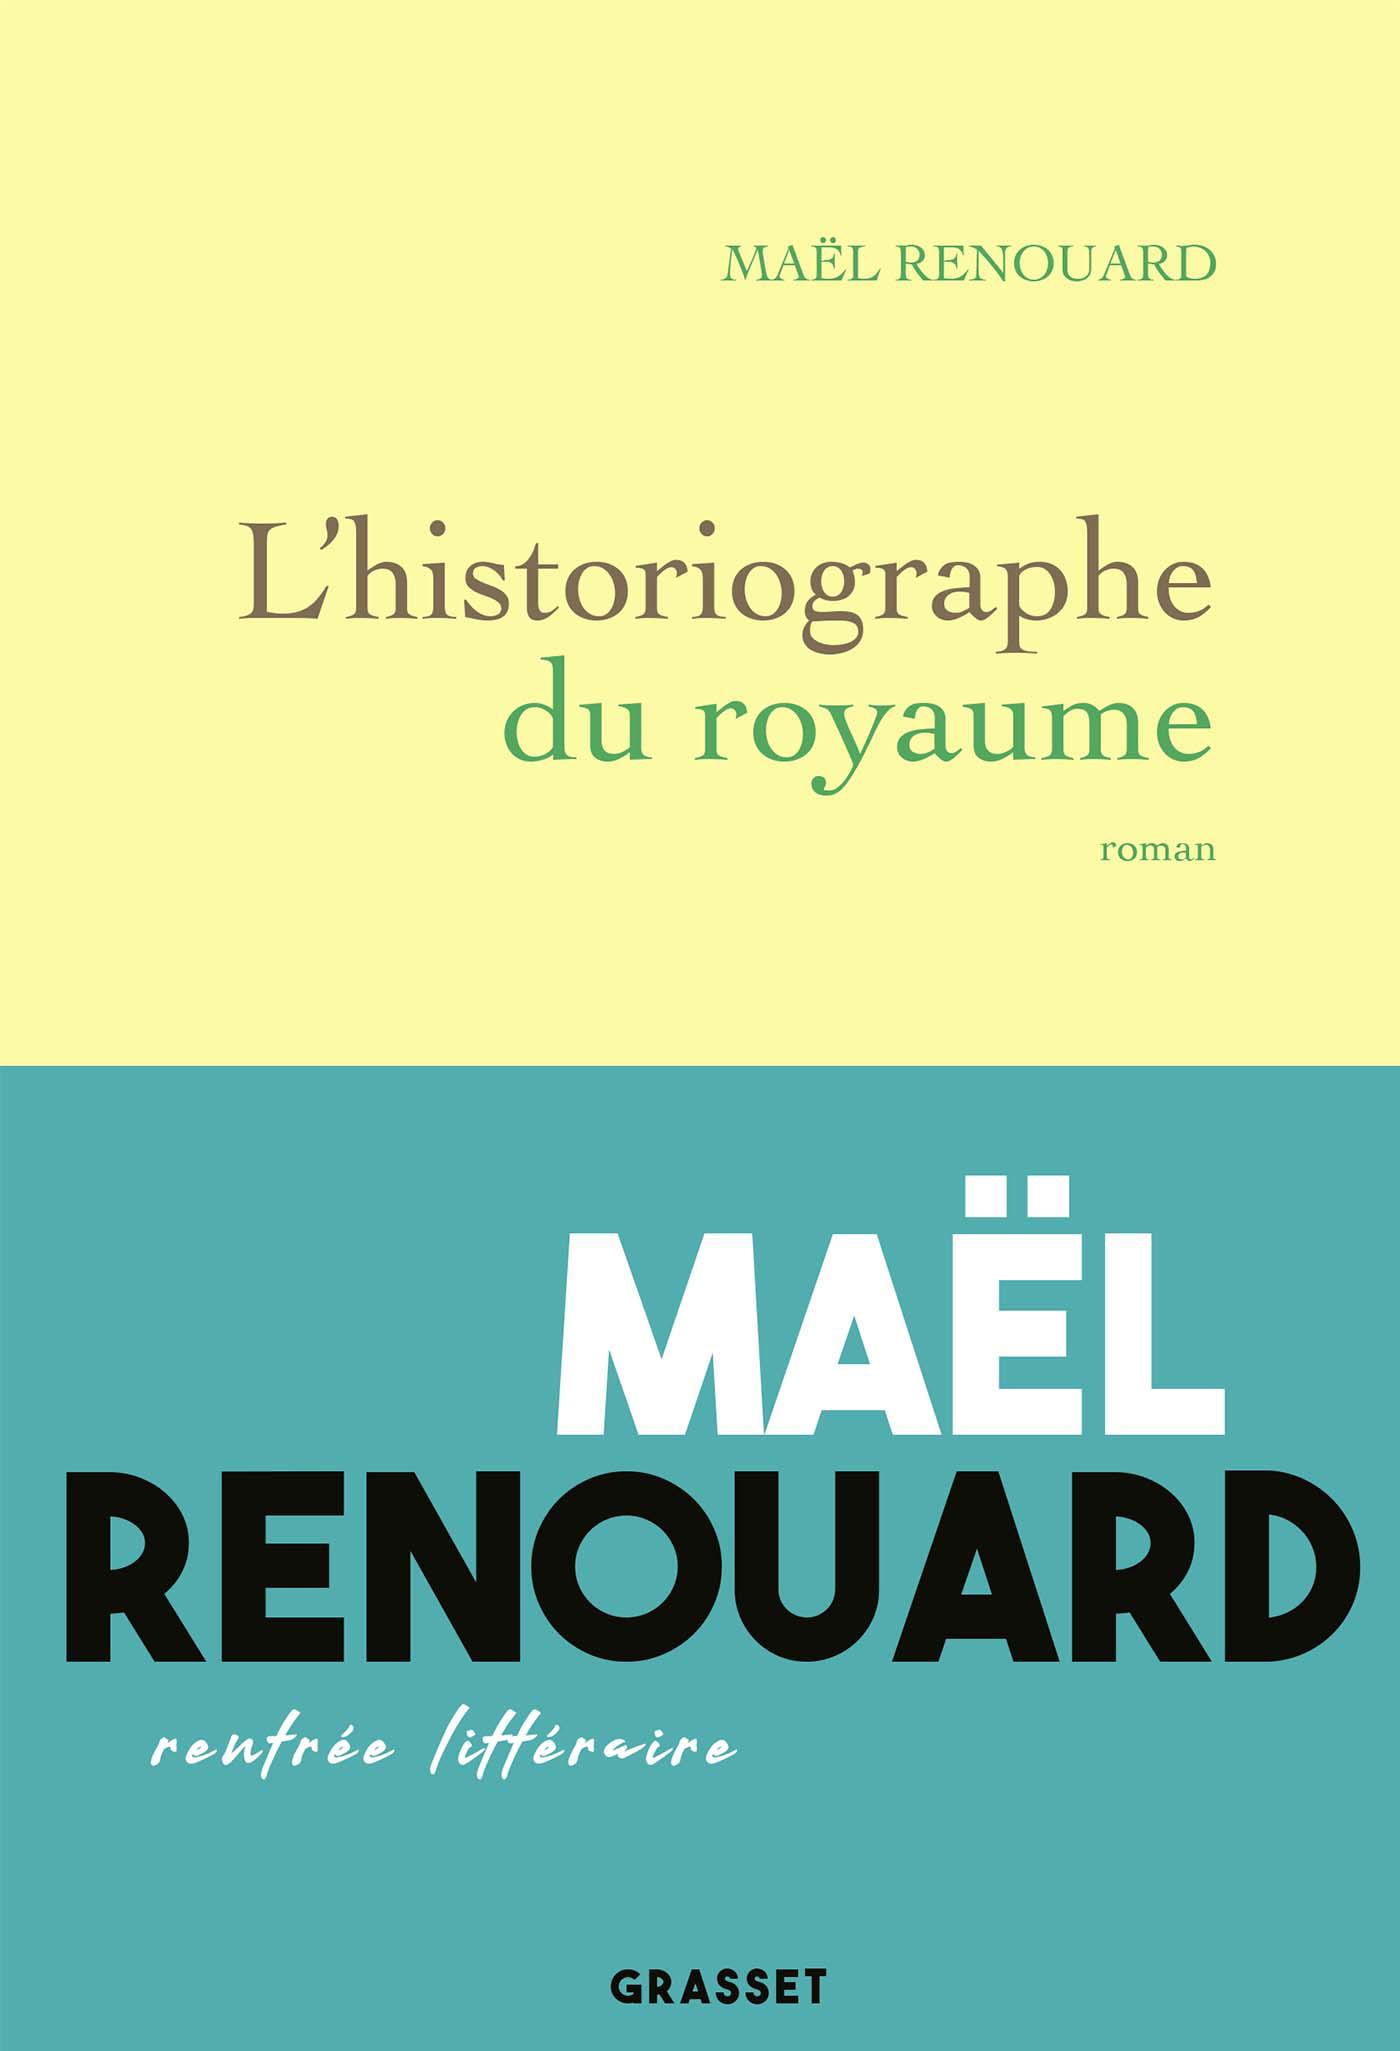 La couverture du livre "L'historiographie du royaume" de Maël Renouard. [Grasset]